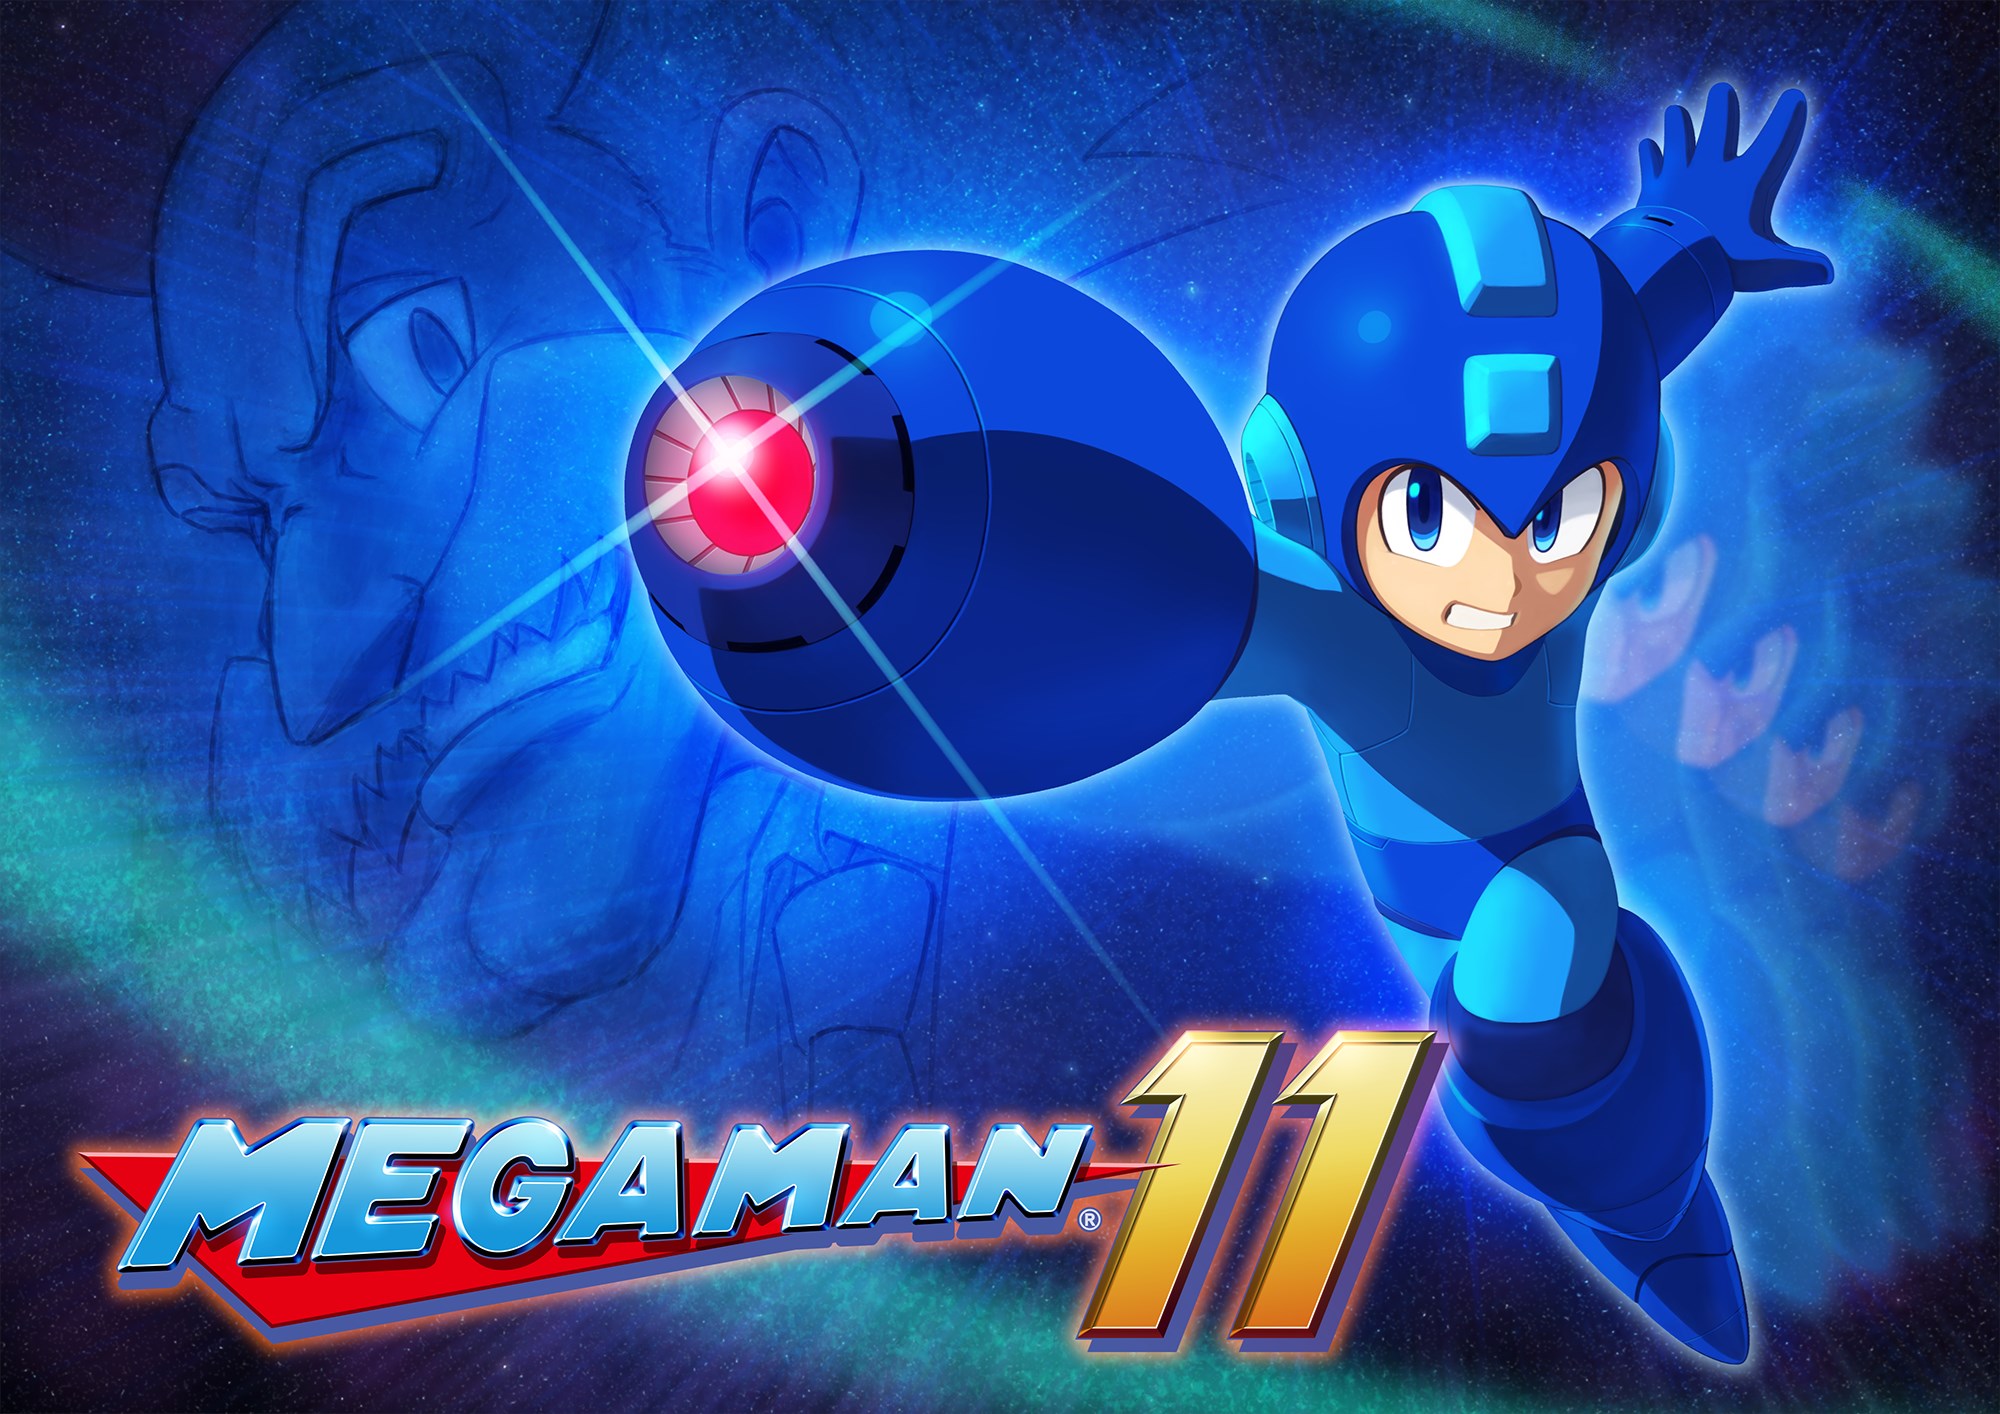 Mega Man 11 and the Mega Man X series are coming next year